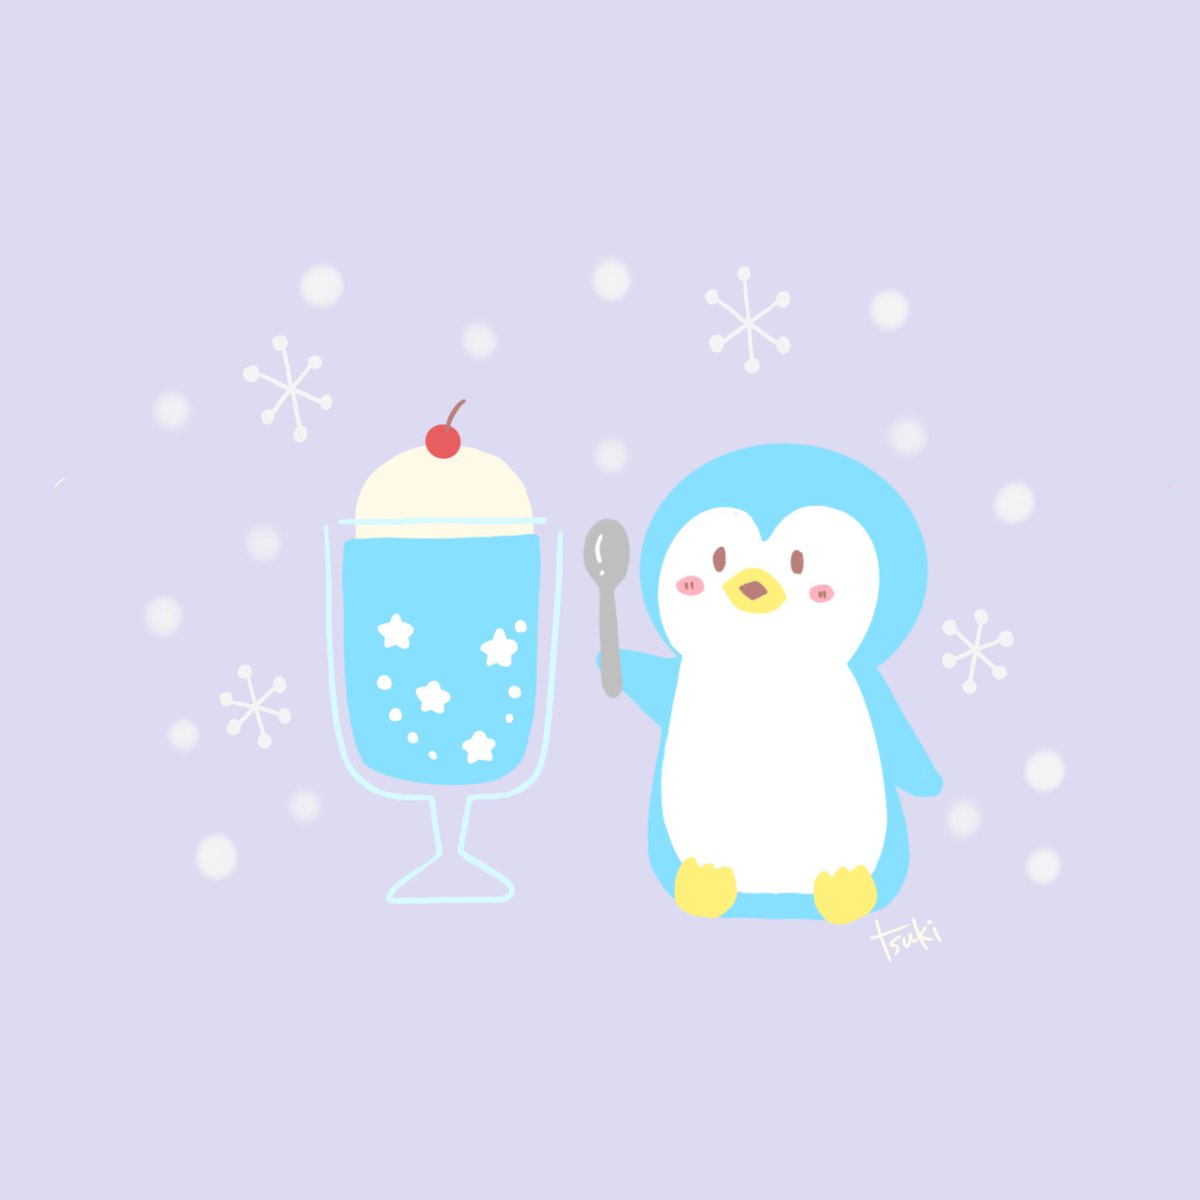 Tsuki 寒いときに食べるアイスは なかなか美味しいのだ イラスト イラスト好きな人と繋がりたい ゆるい絵 ゆるいイラスト ゆるかわ 癒し お絵描き フォローミー Illust クリームソーダ ペンギンイラスト